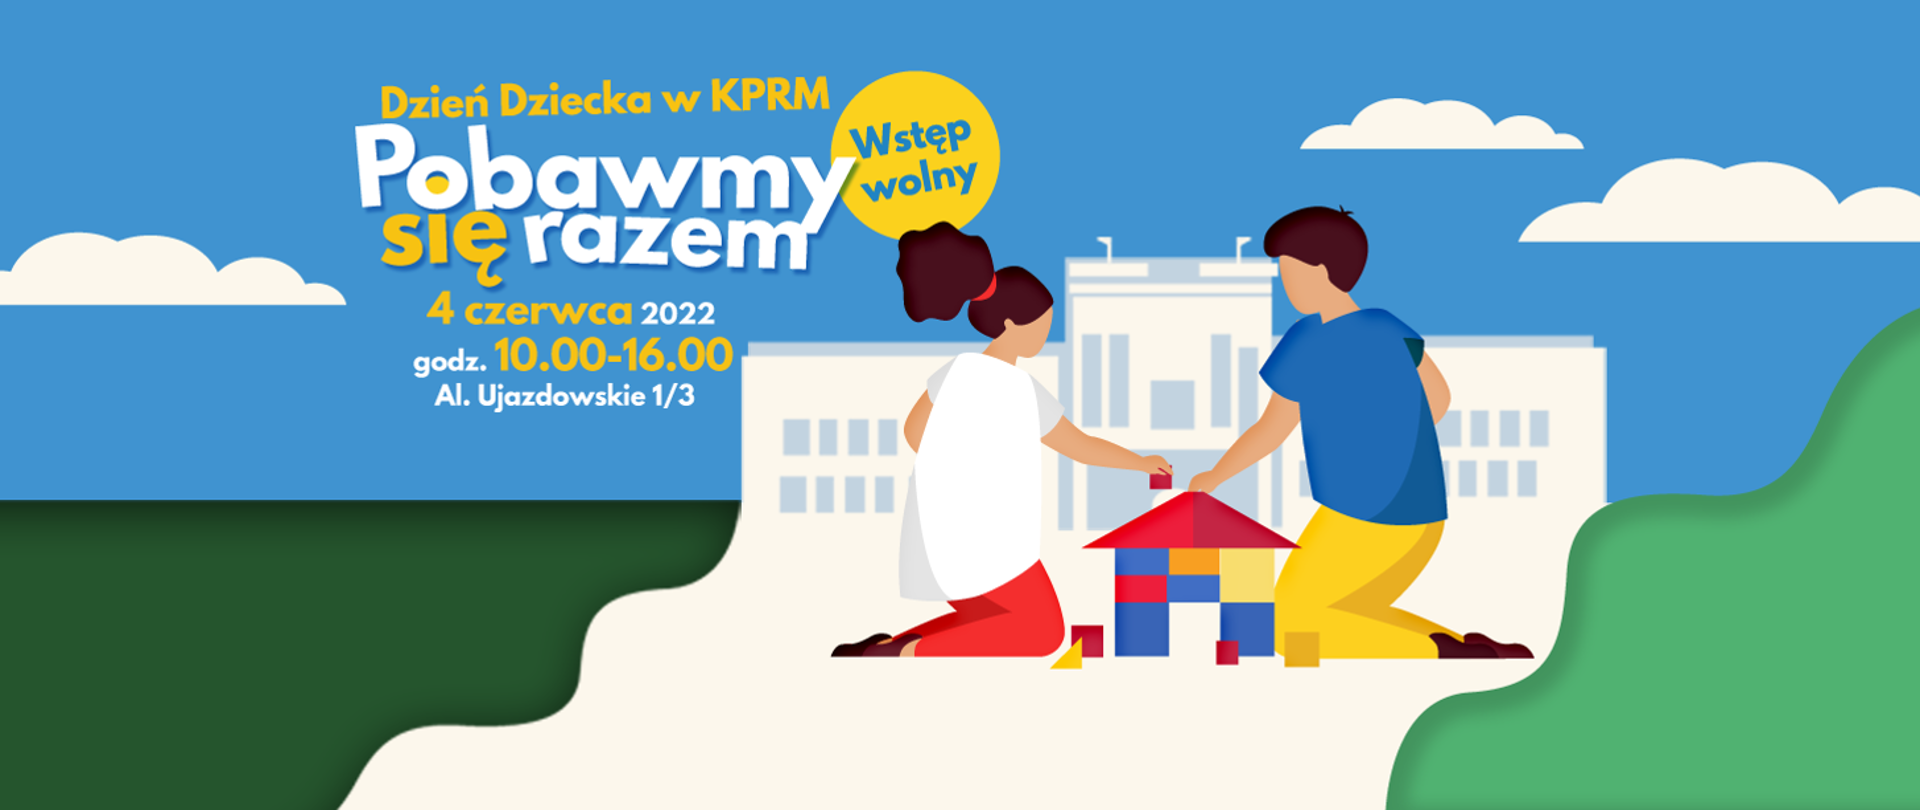 Dzień Dziecka w KPRM, 4 czerwca 2022, godz. 10-16, Aleje Ujazdowskie 1/3. Wstęp wolny.